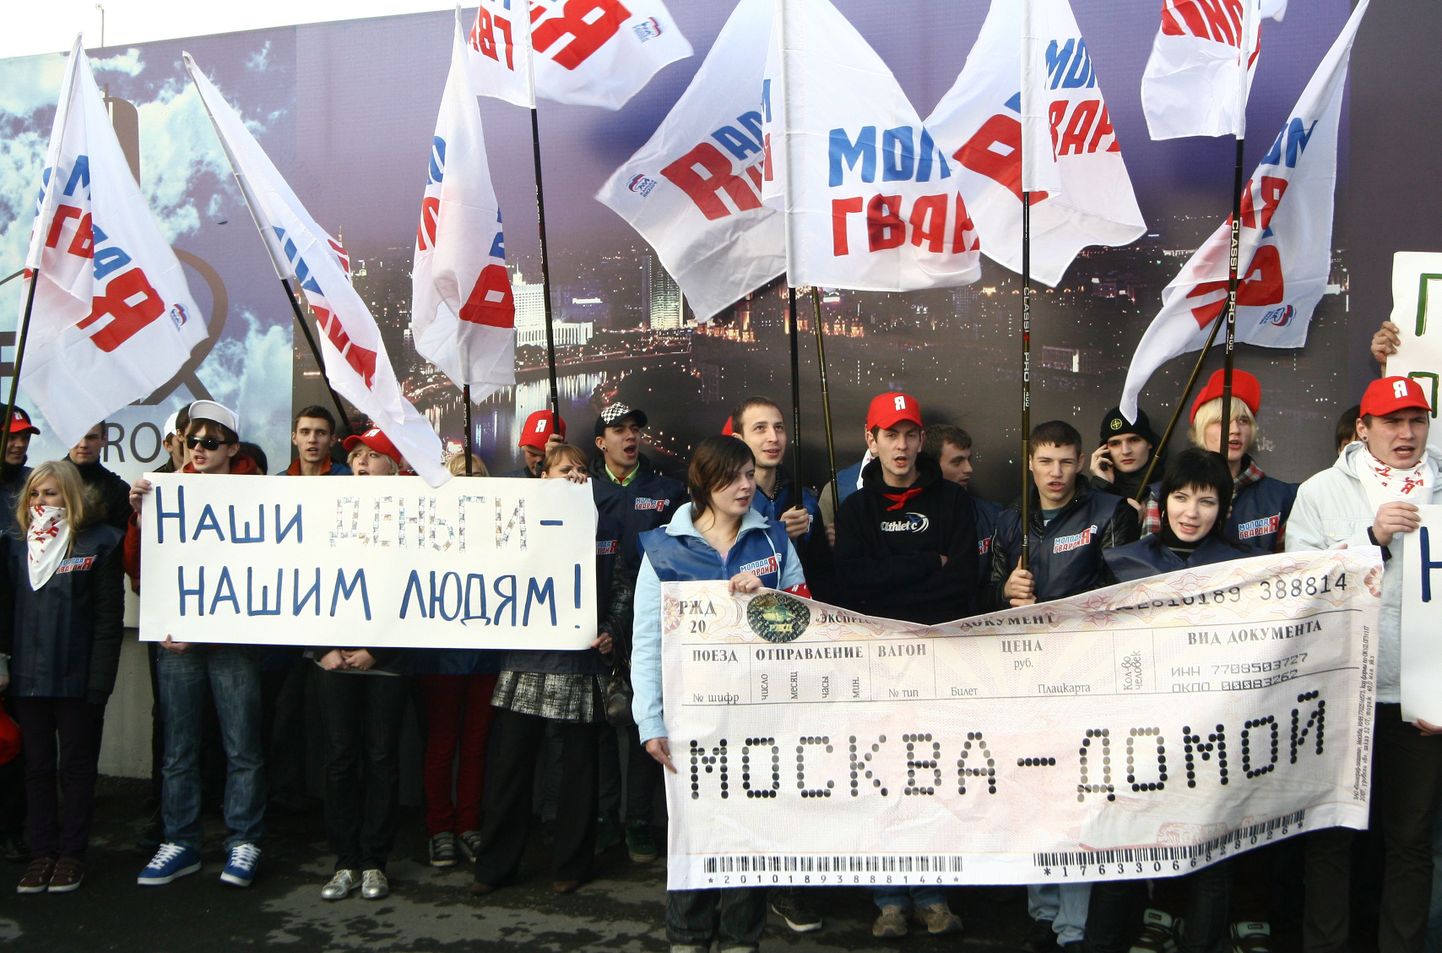 Активисты движения "Молодая гвардия" на митинге против трудовой миграции в Москве.